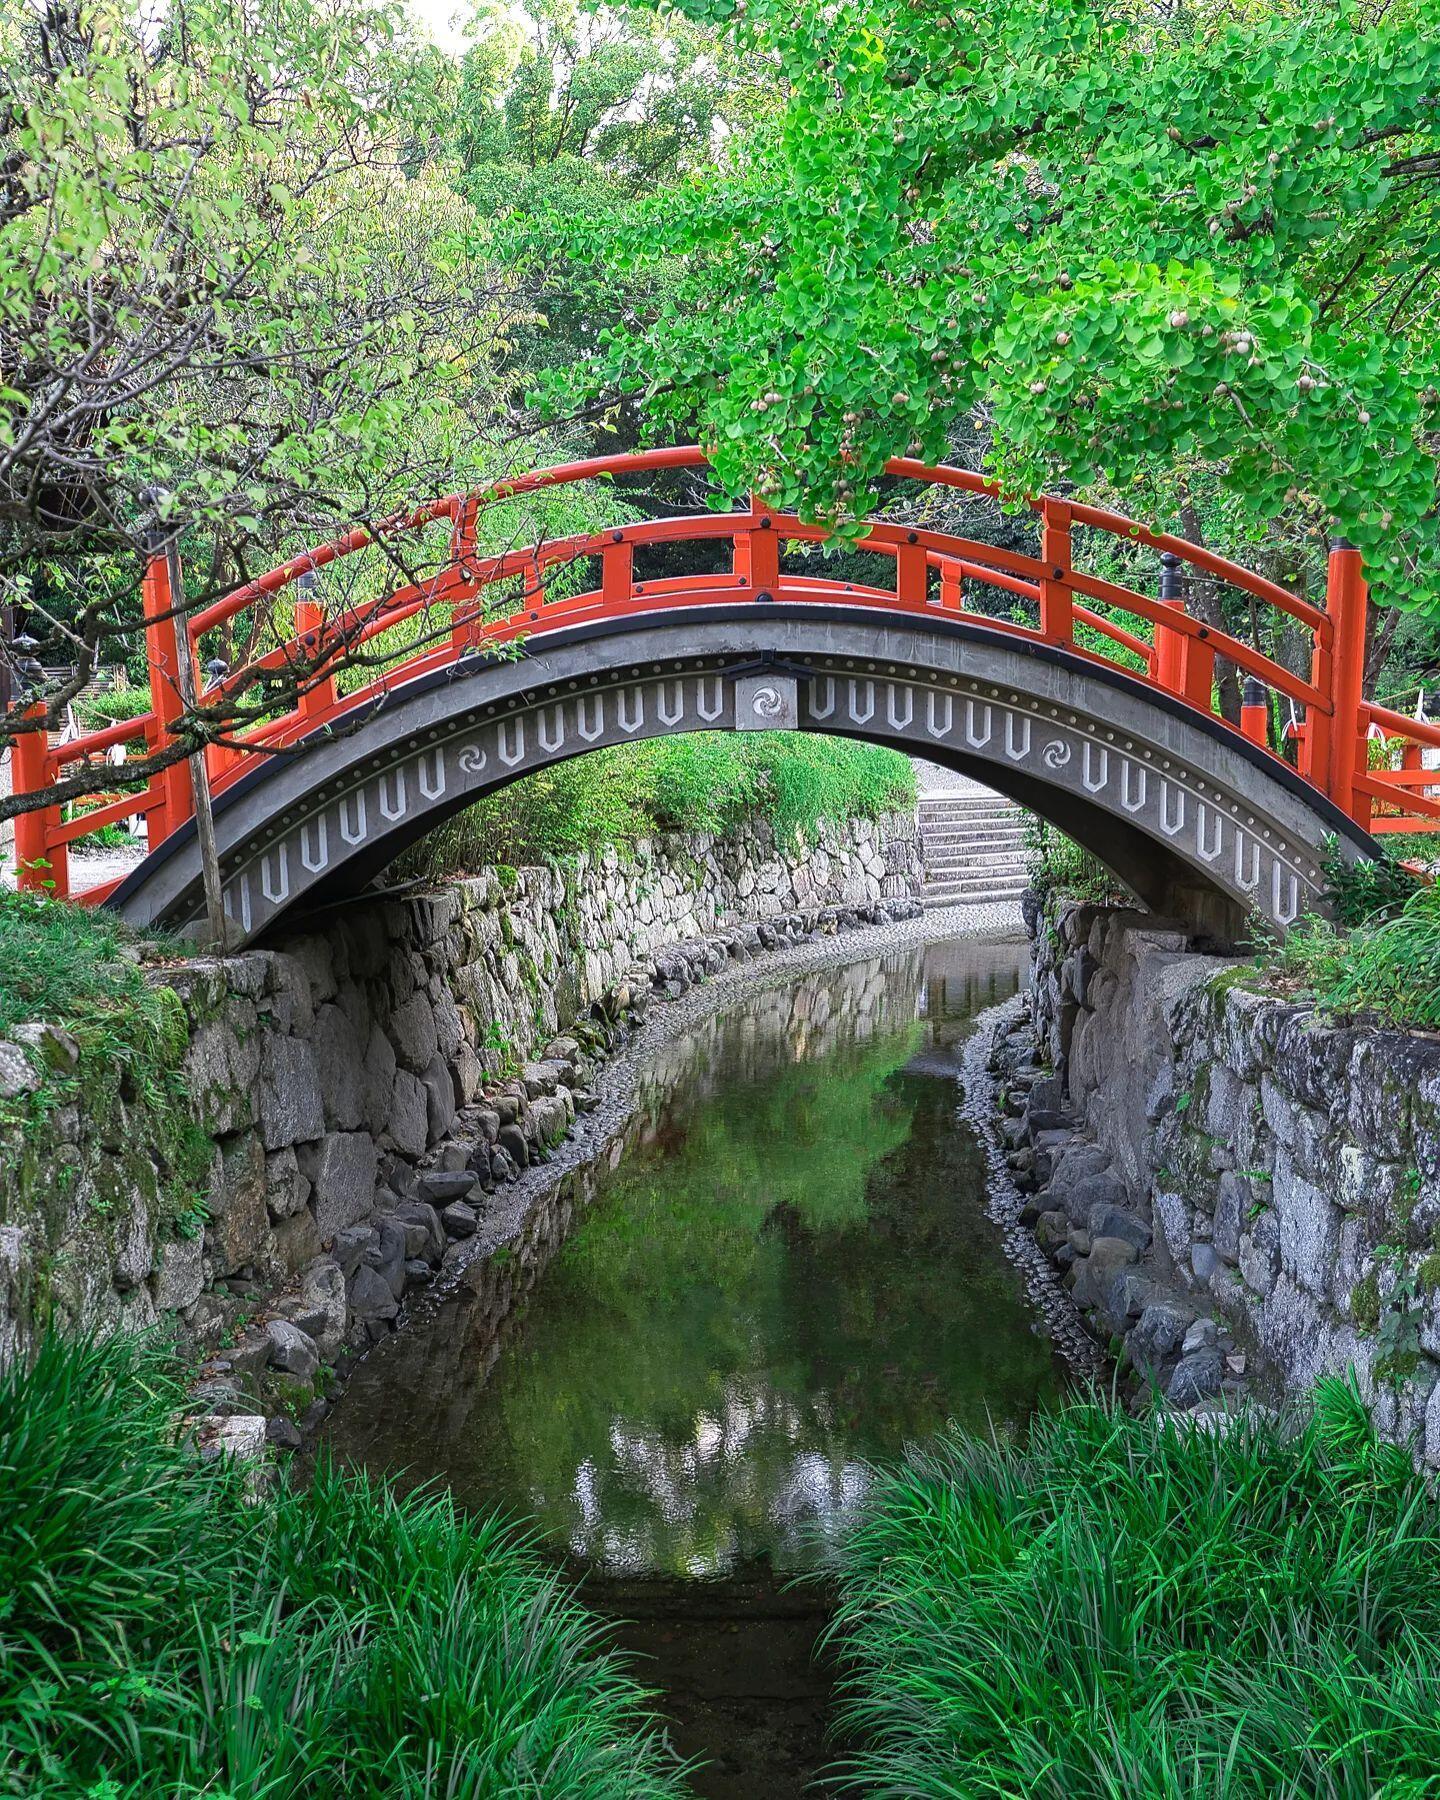 Puente en el Santuario Shimogamo (下鴨神社 Shimogamo-jinja?), ubicado en un importante santuario sintoísta que se encuentra en el distrito Shimogamo, dentro del Sakyo-ku de Kioto.Los puentes unen, conectan, permiten, dejan fluir.¿Qué puentes necesitas en tu vida? ¿Qué te impide construirlos?¿Qué sitio de Japón te gustaría visitar?️ Feliz viaje de autodescubrimiento y despertarCasa Reiki y Salud, una caricia para el alma, ampliando el circulo de luz, promoviendo una vida de felicidad y bienestar.Gracias, gracias, gracias, Gassho, @dinopierini🌐Página WEB: www.gReiki.com#consciencia #alma #bienestar #inspiracion #despertar #despertarespiritual #reikimaracaibo #reikivenezuela #reikizulia #reikisalud #Ujibashi #japan #japon #kyoto #japanesegarden#shimogamoshrine #japanesegarden #kyotojapan #japaneseshrine #kyototravel